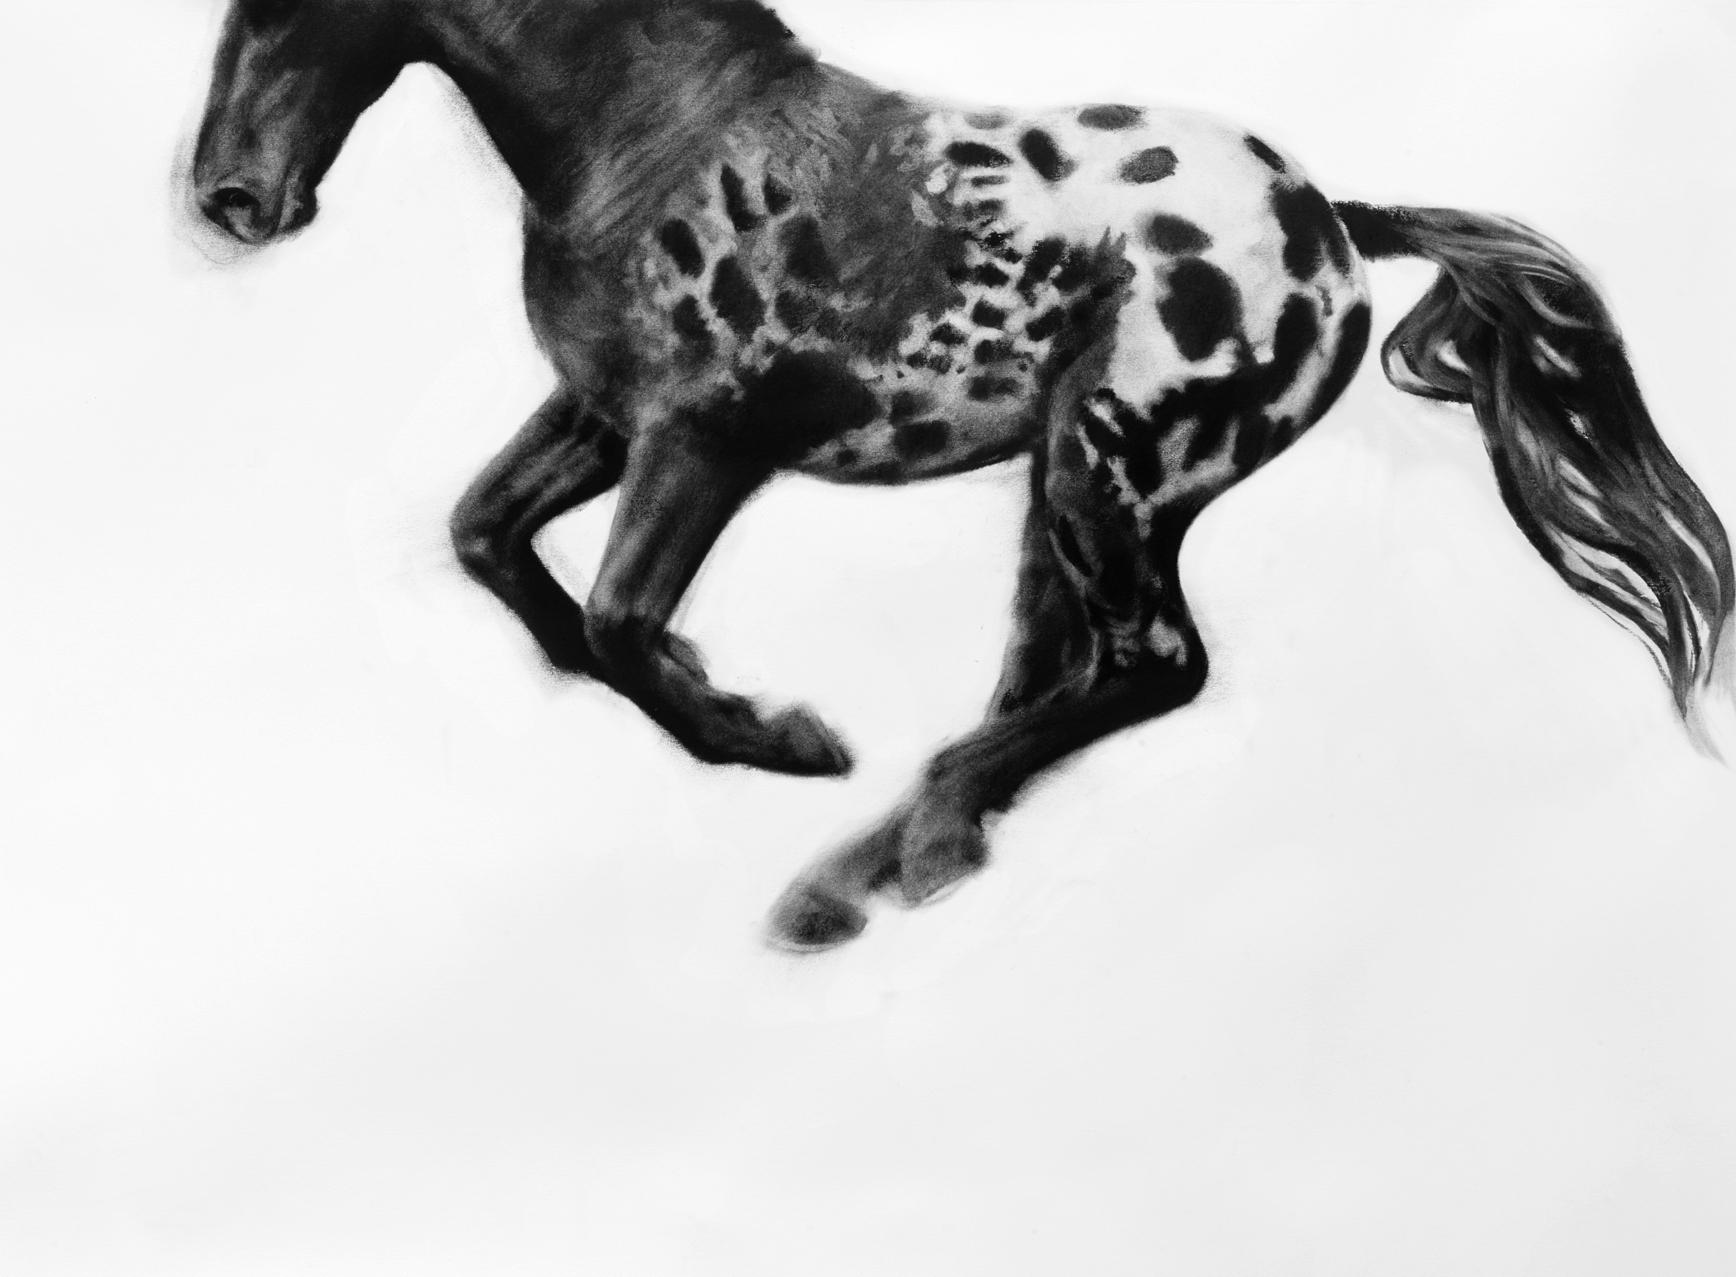 Hocus Focus, dessin de cheval réaliste dynamique, fusain sur papier - Painting de Patsy McArthur